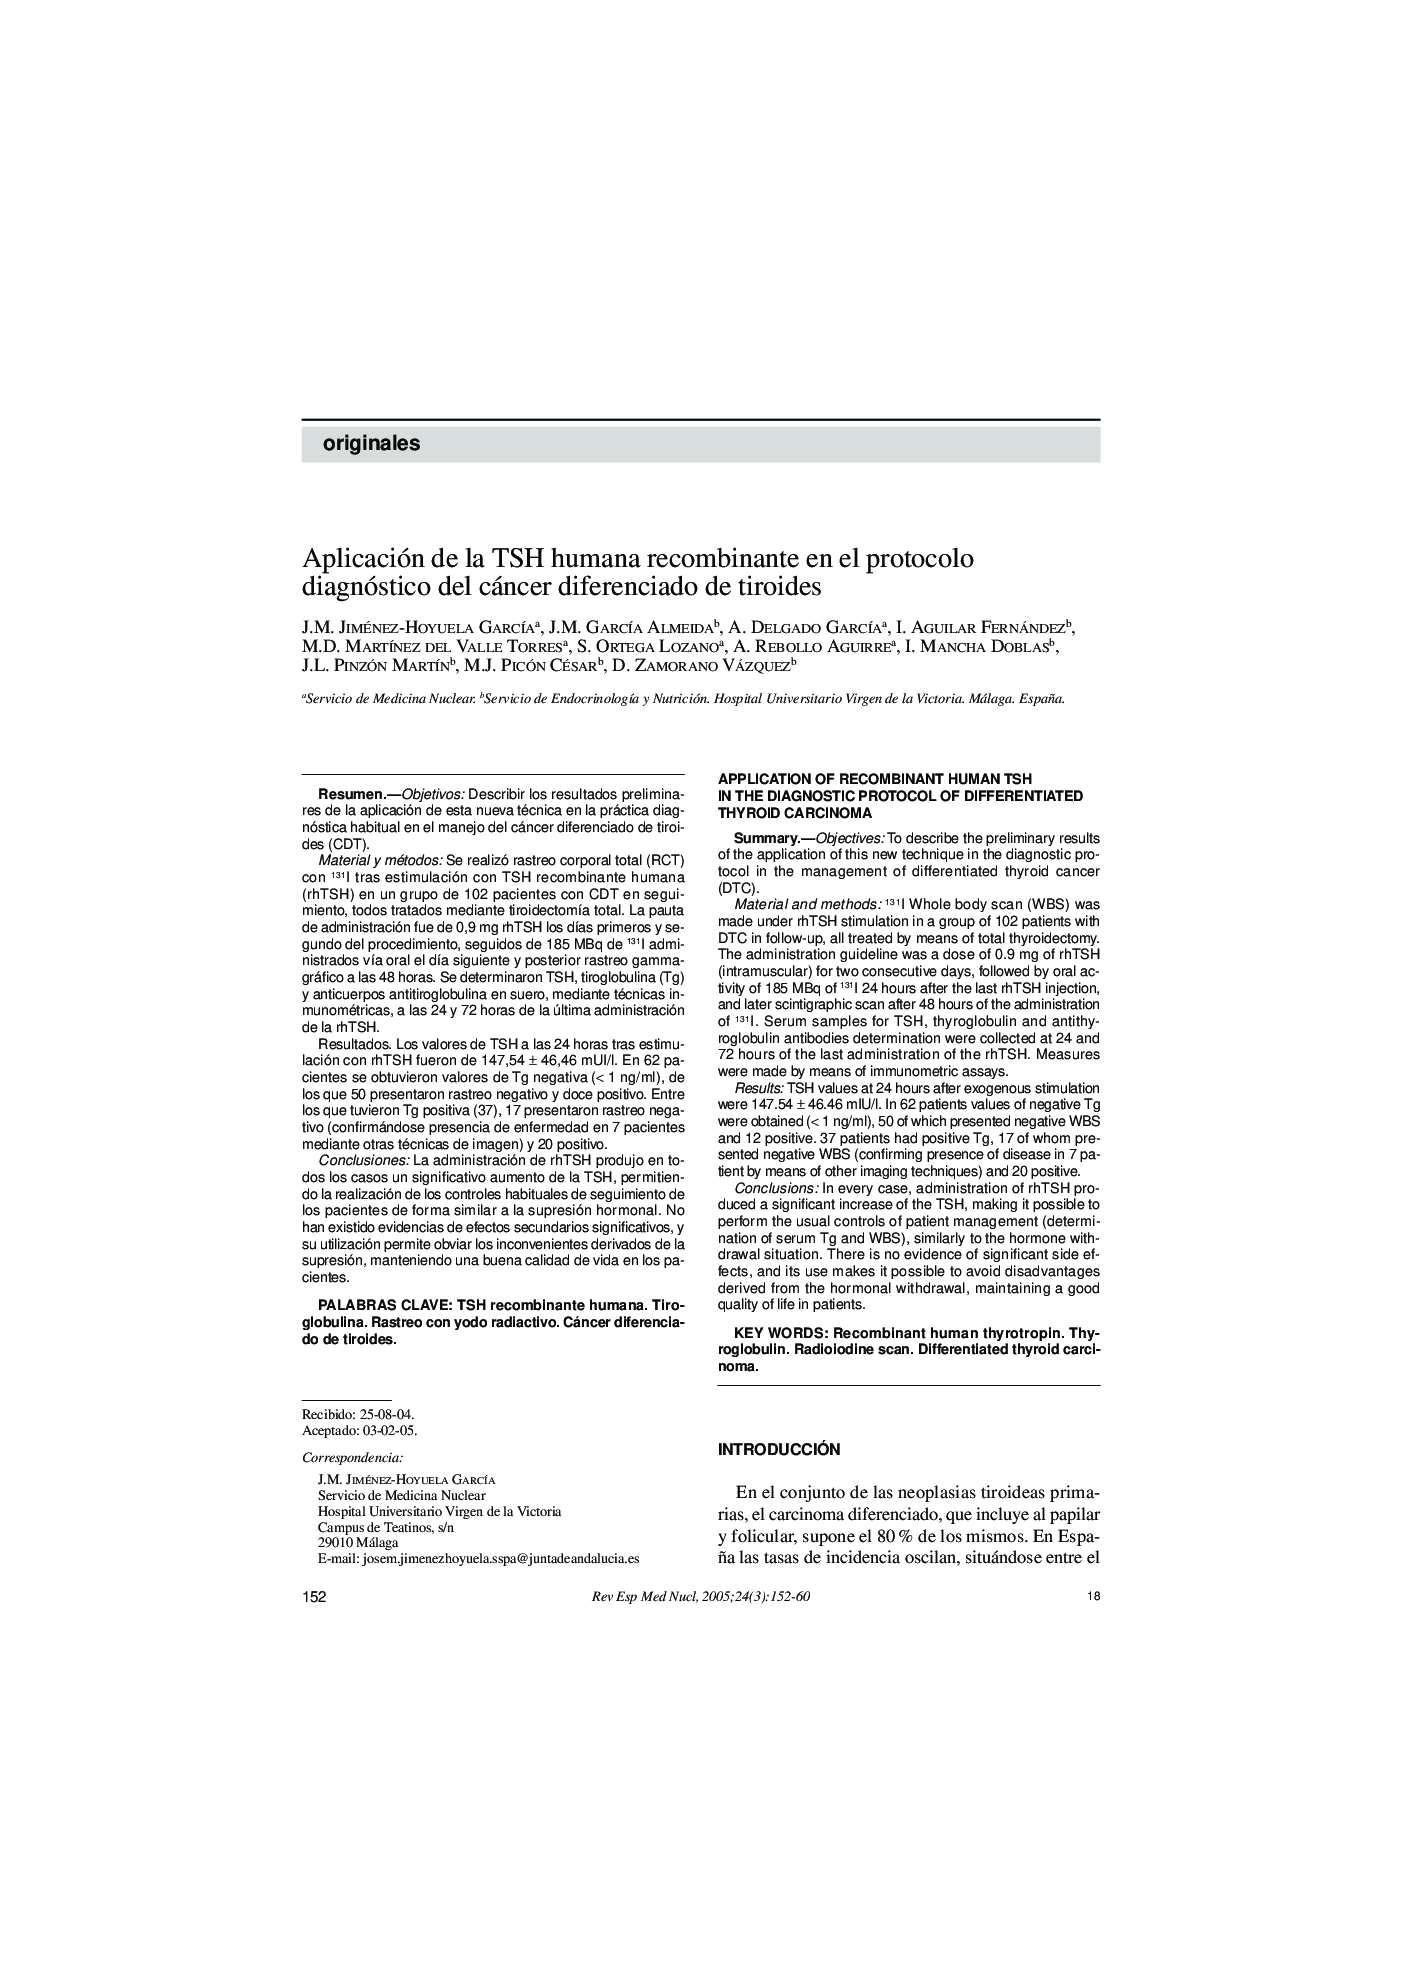 Aplicación de la TSH humana recombinante en el protocolo diagnóstico del cáncer diferenciado de tiroides